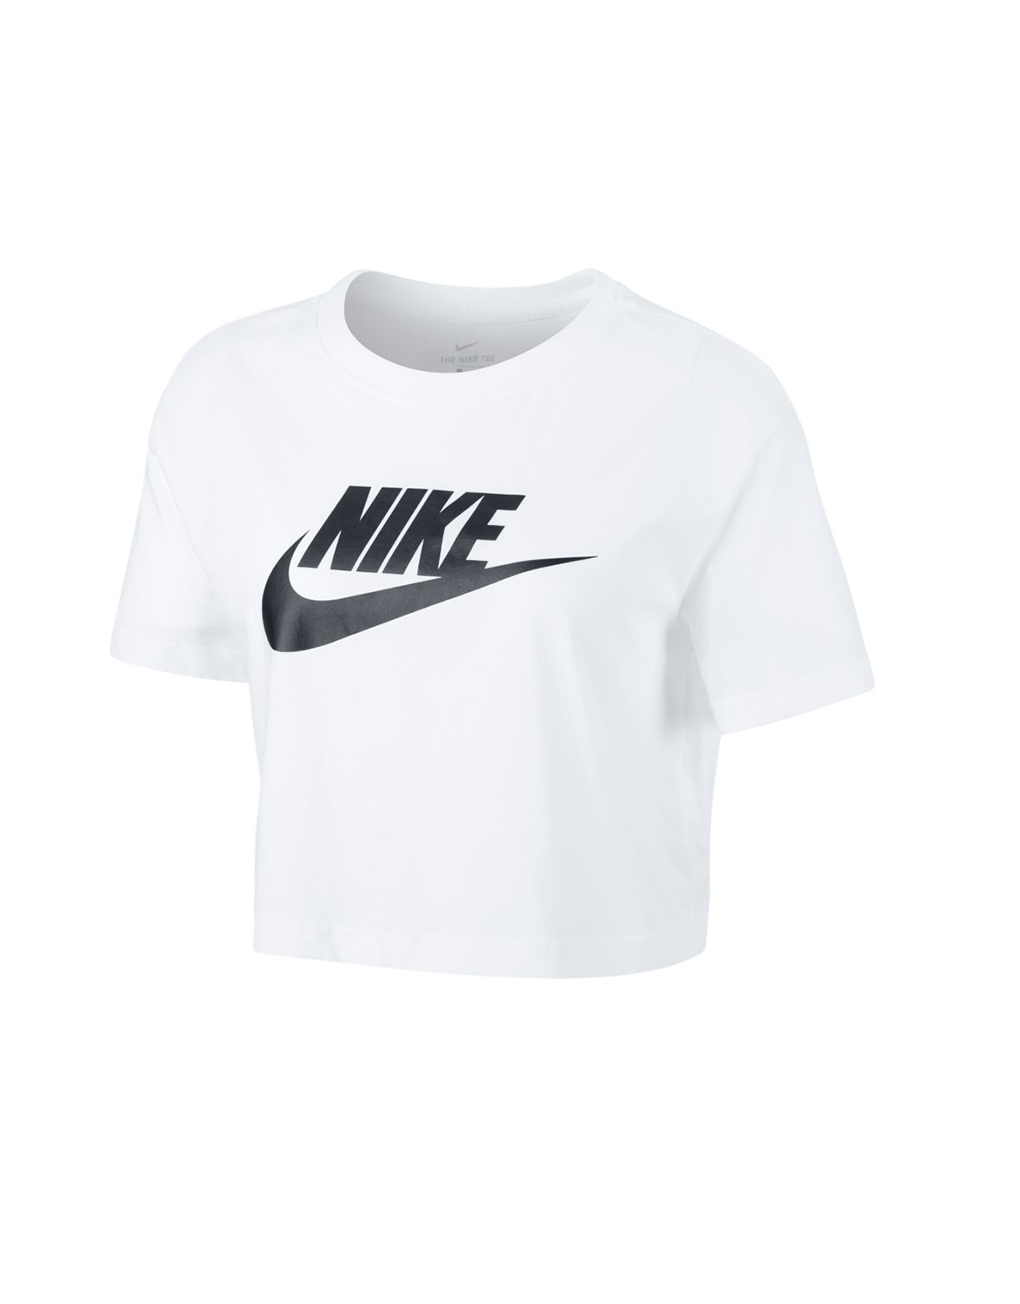 NIKE – Sportswear essential women’s cropped t-shirt